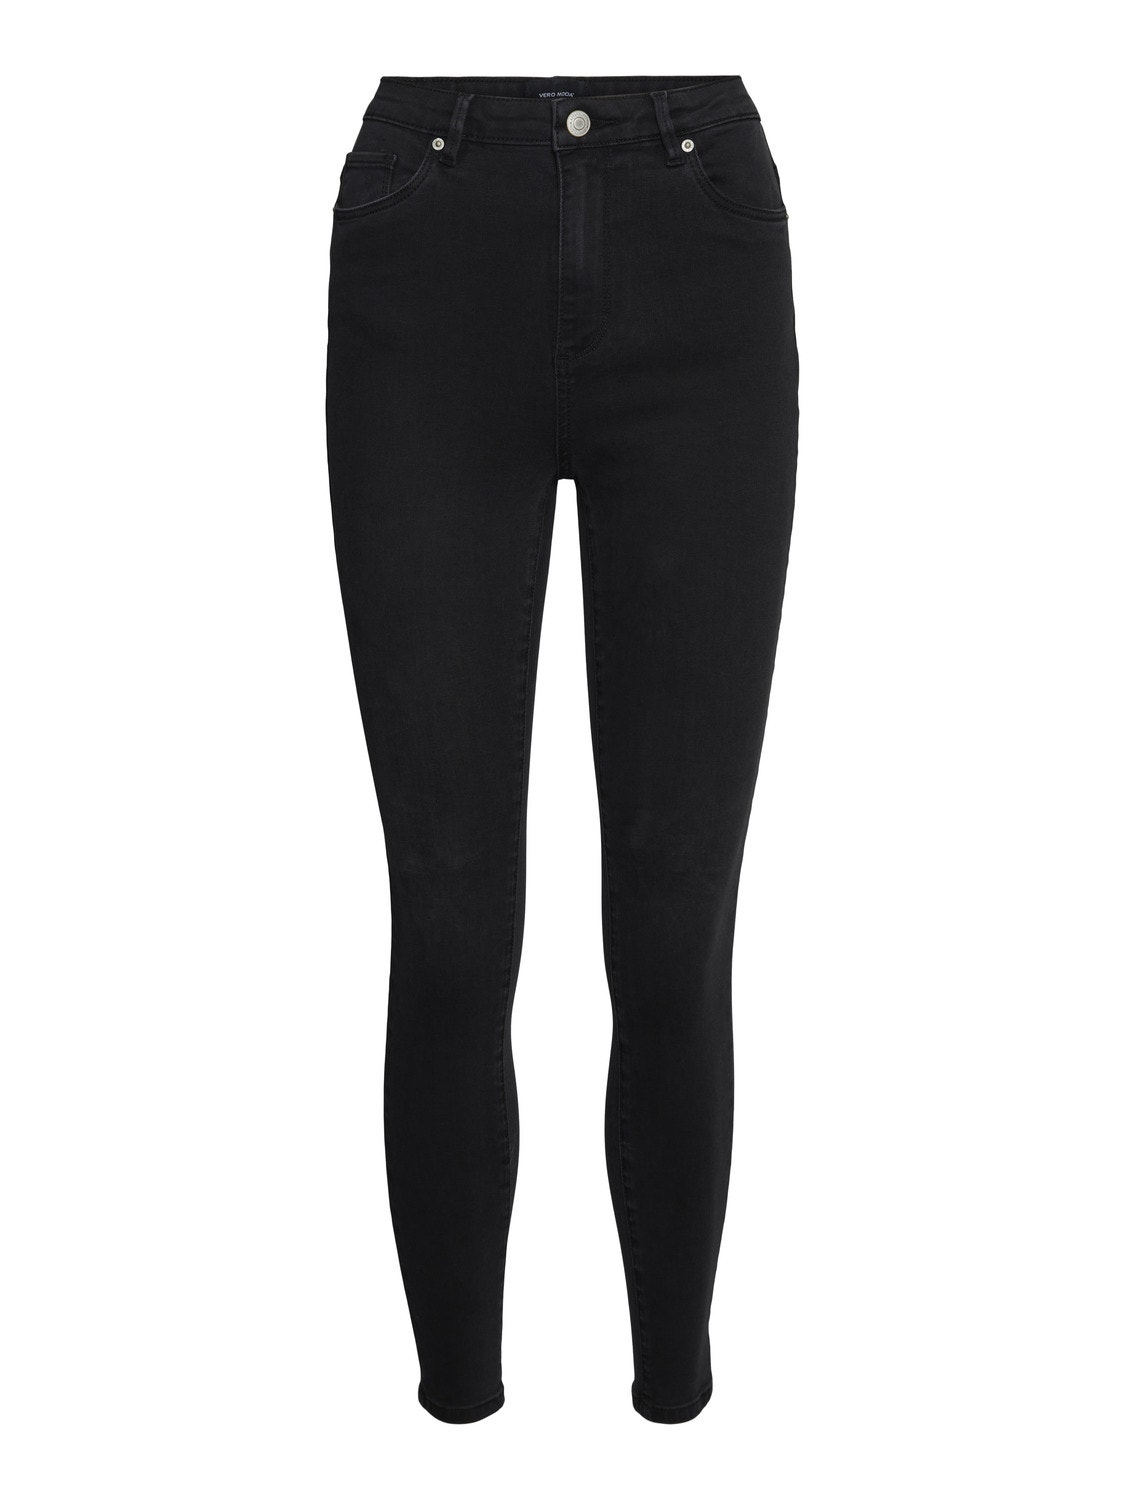 Vero Moda VMSOPHIA Skinny Fit Jeans -Black Denim - 10290488